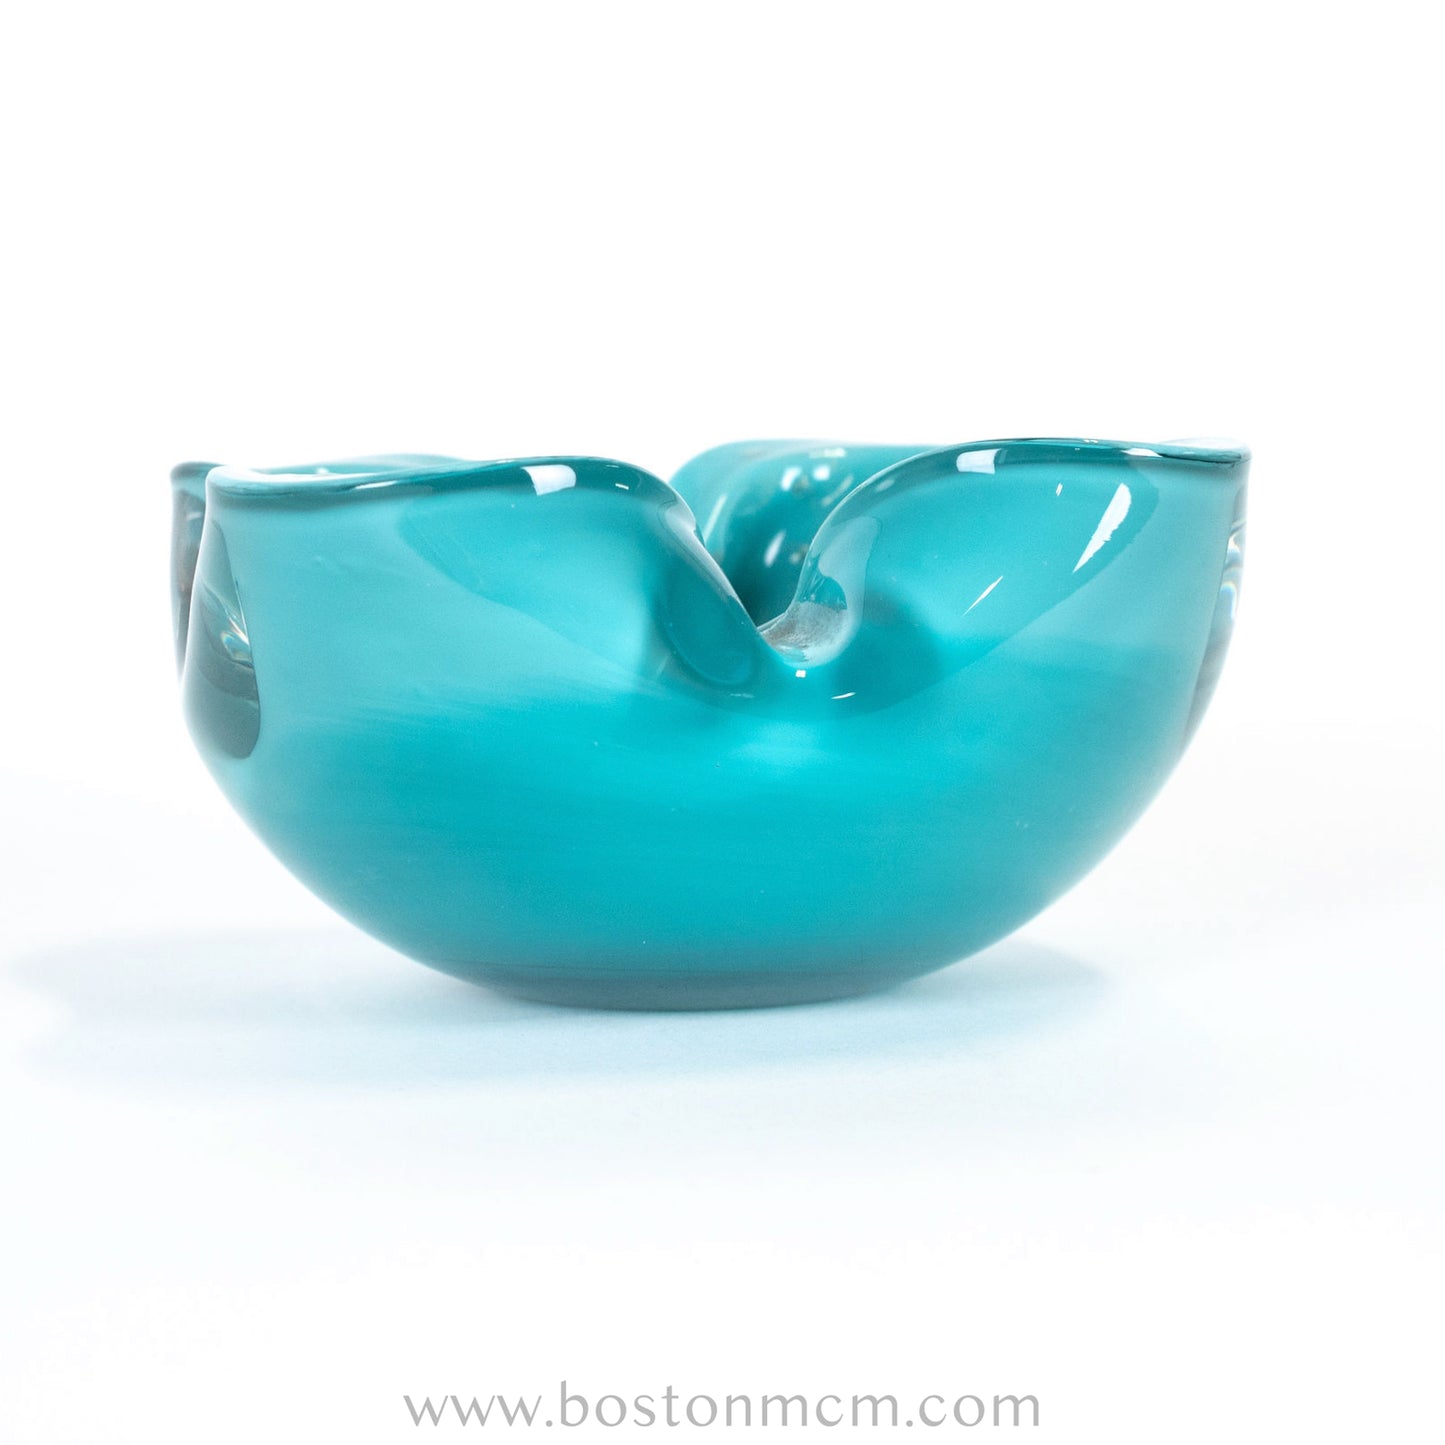 Italian Murano Art Glass Blue / Teal Bowl, by Alfredo Barbini Bollinato